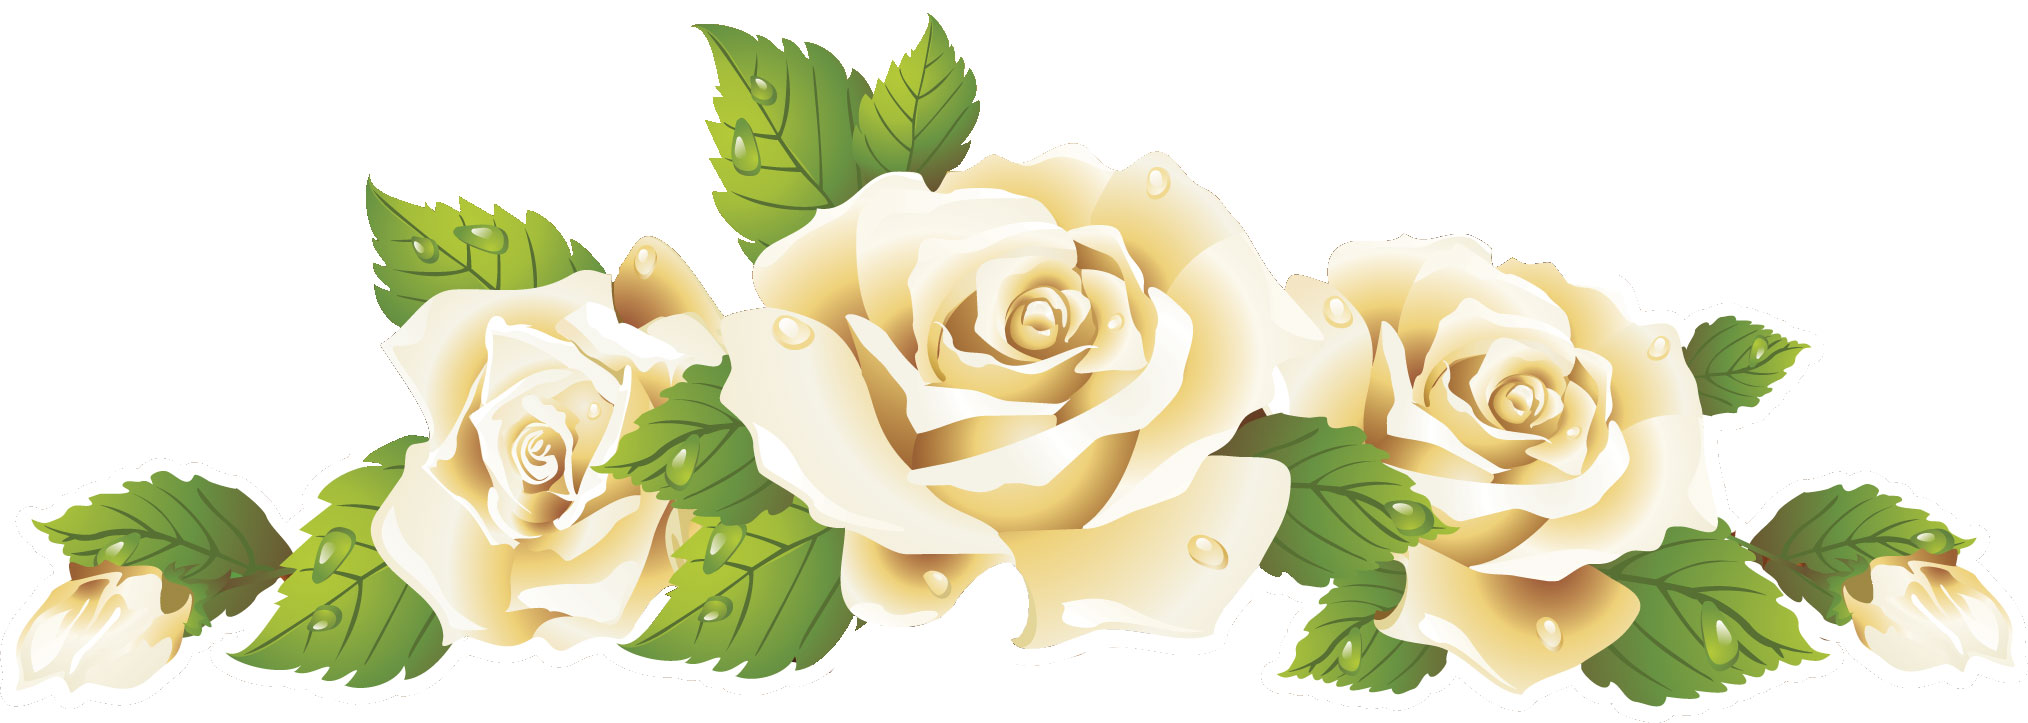 薔薇のイラスト見本-白バラ